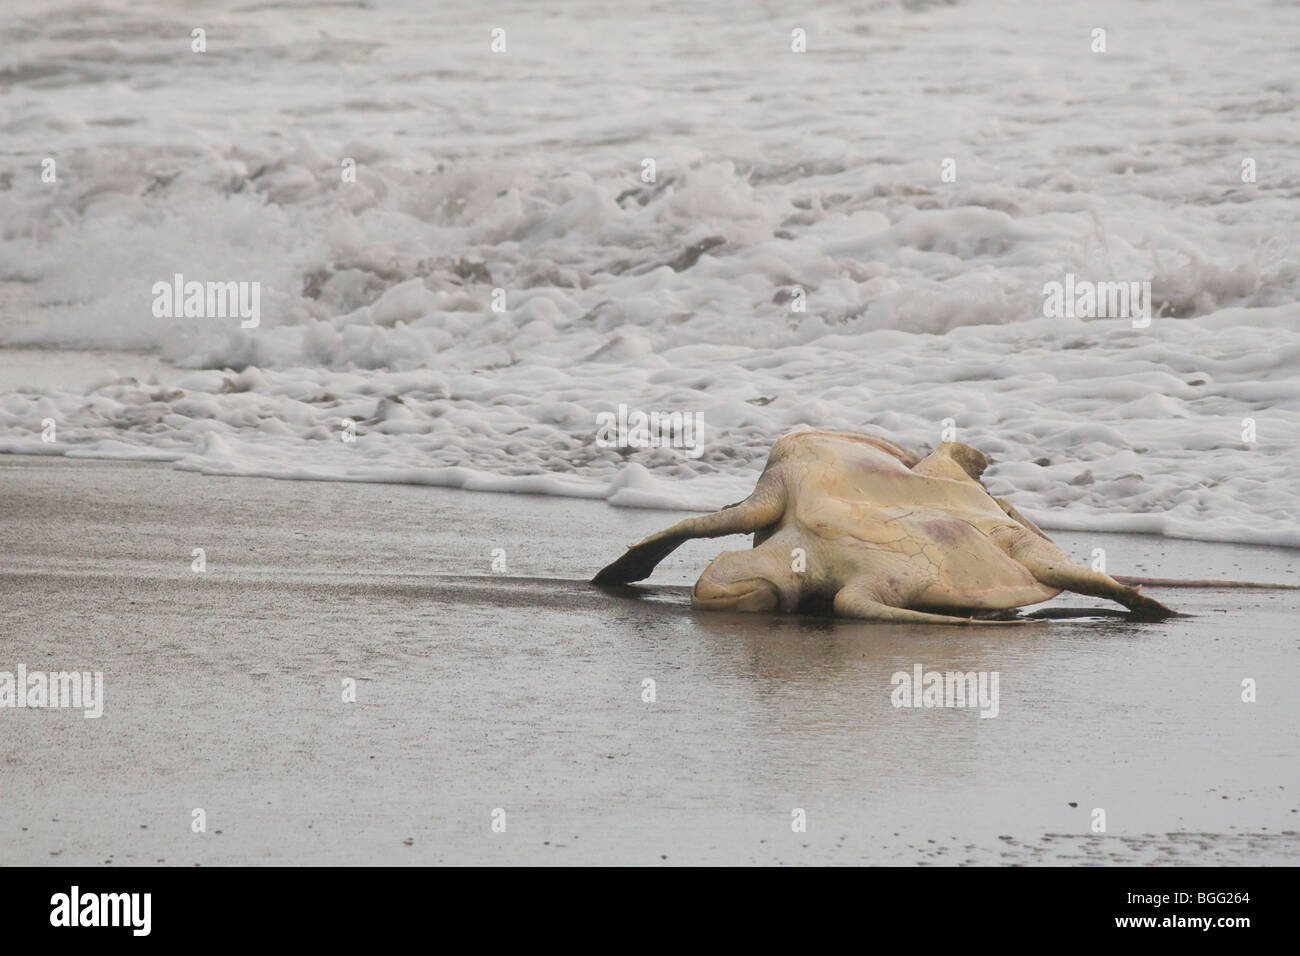 Dead tortues olivâtres, Lepidochelys olivacea (une espèce menacée), échoués sur une plage au Costa Rica. Banque D'Images